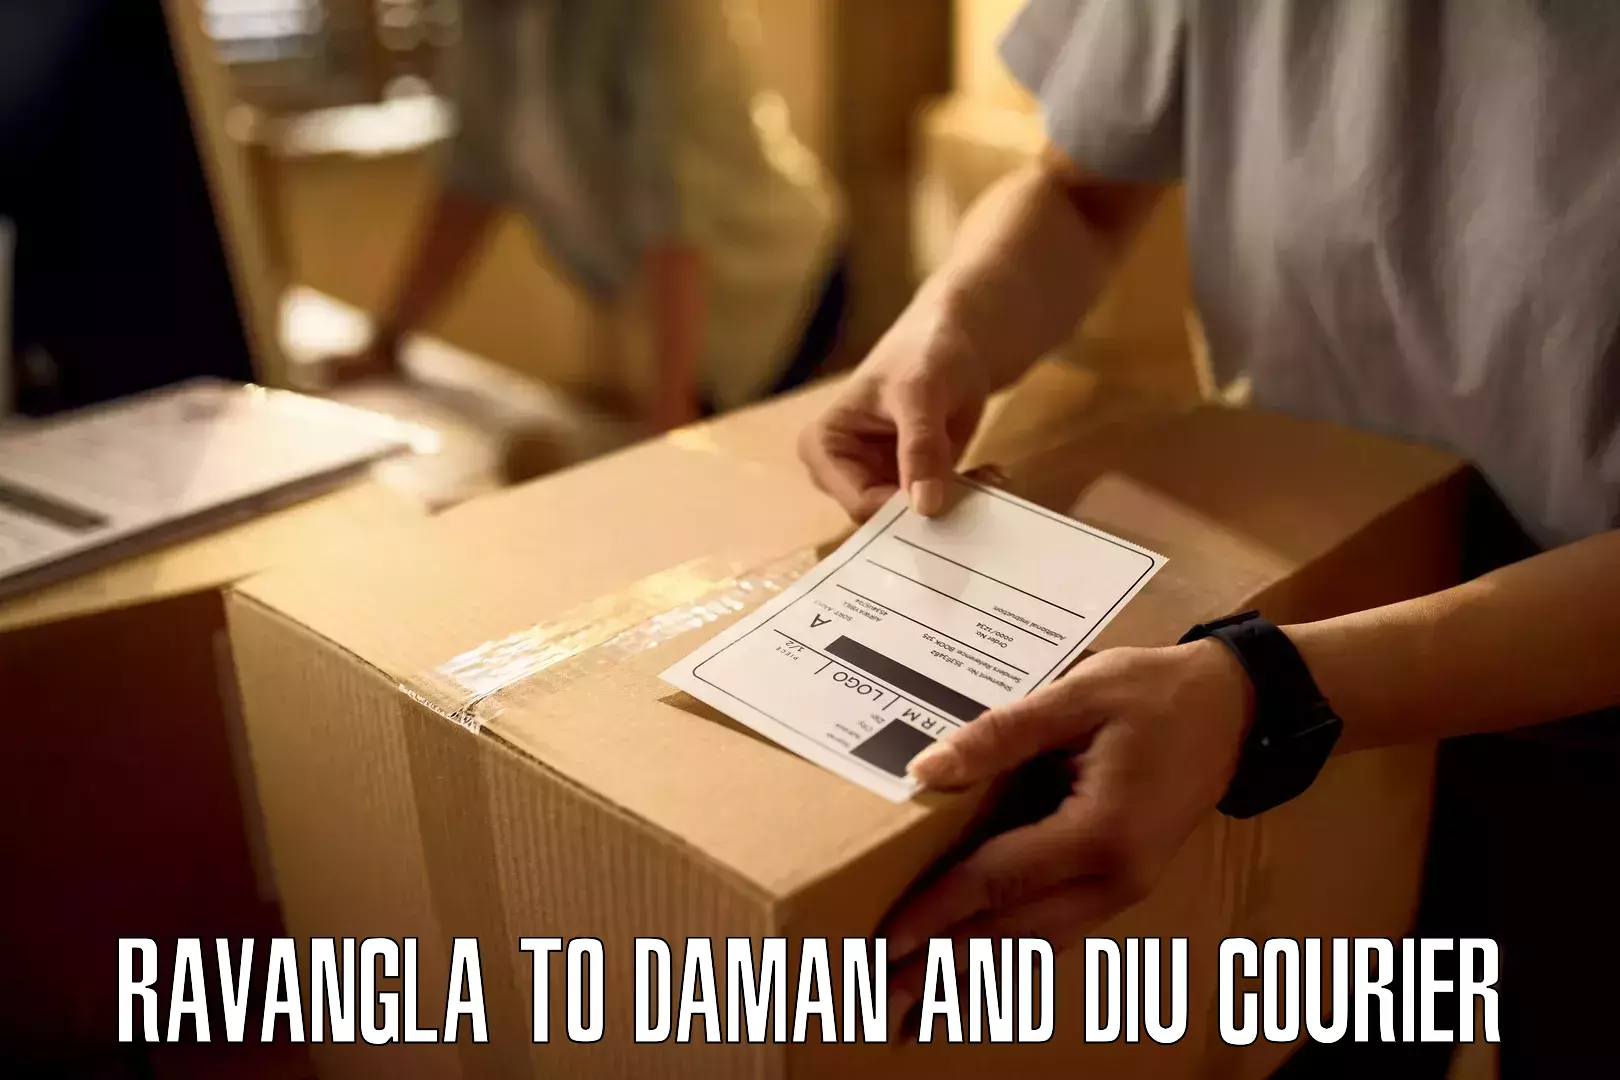 Cargo courier service Ravangla to Diu